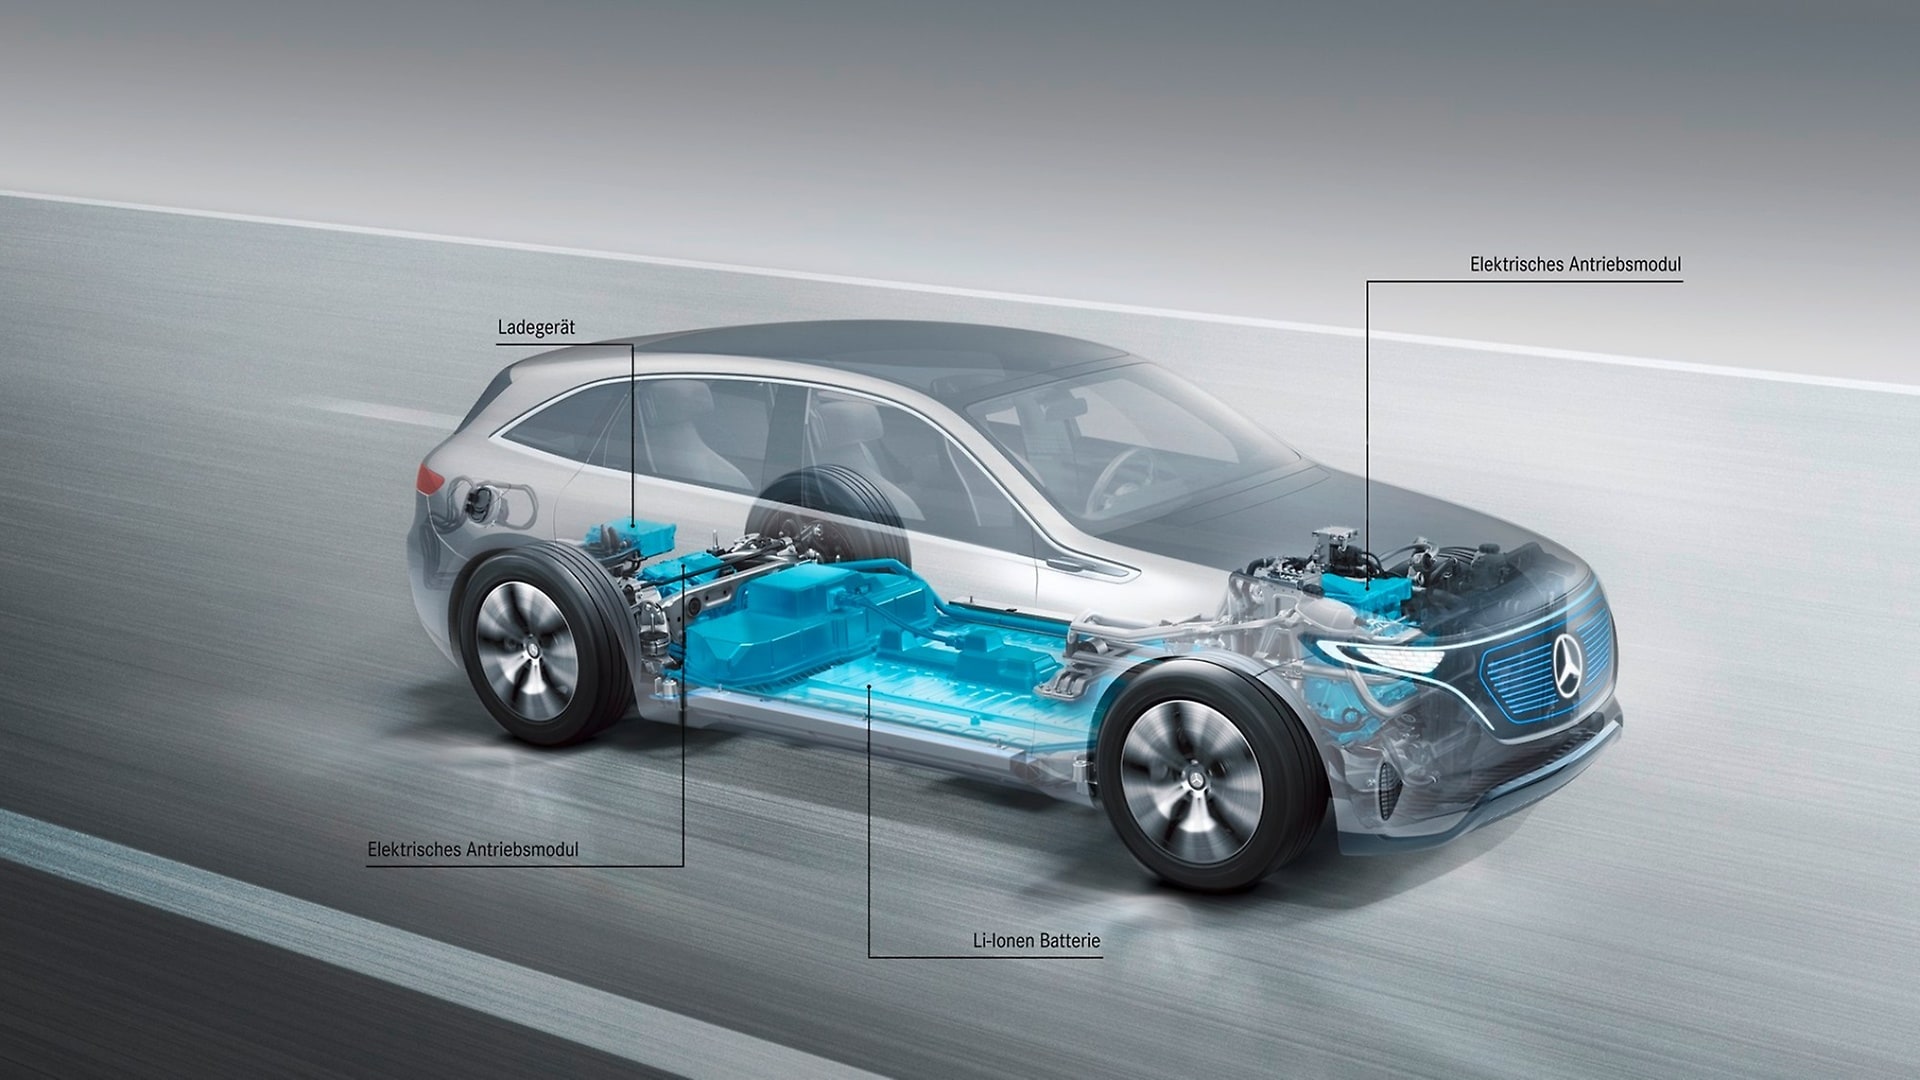 Kraftvolles Fahrzeug durch Elektromotoren an Vorder- und Hinterachse und in den Fahrzeugboden integrierter Batterie.